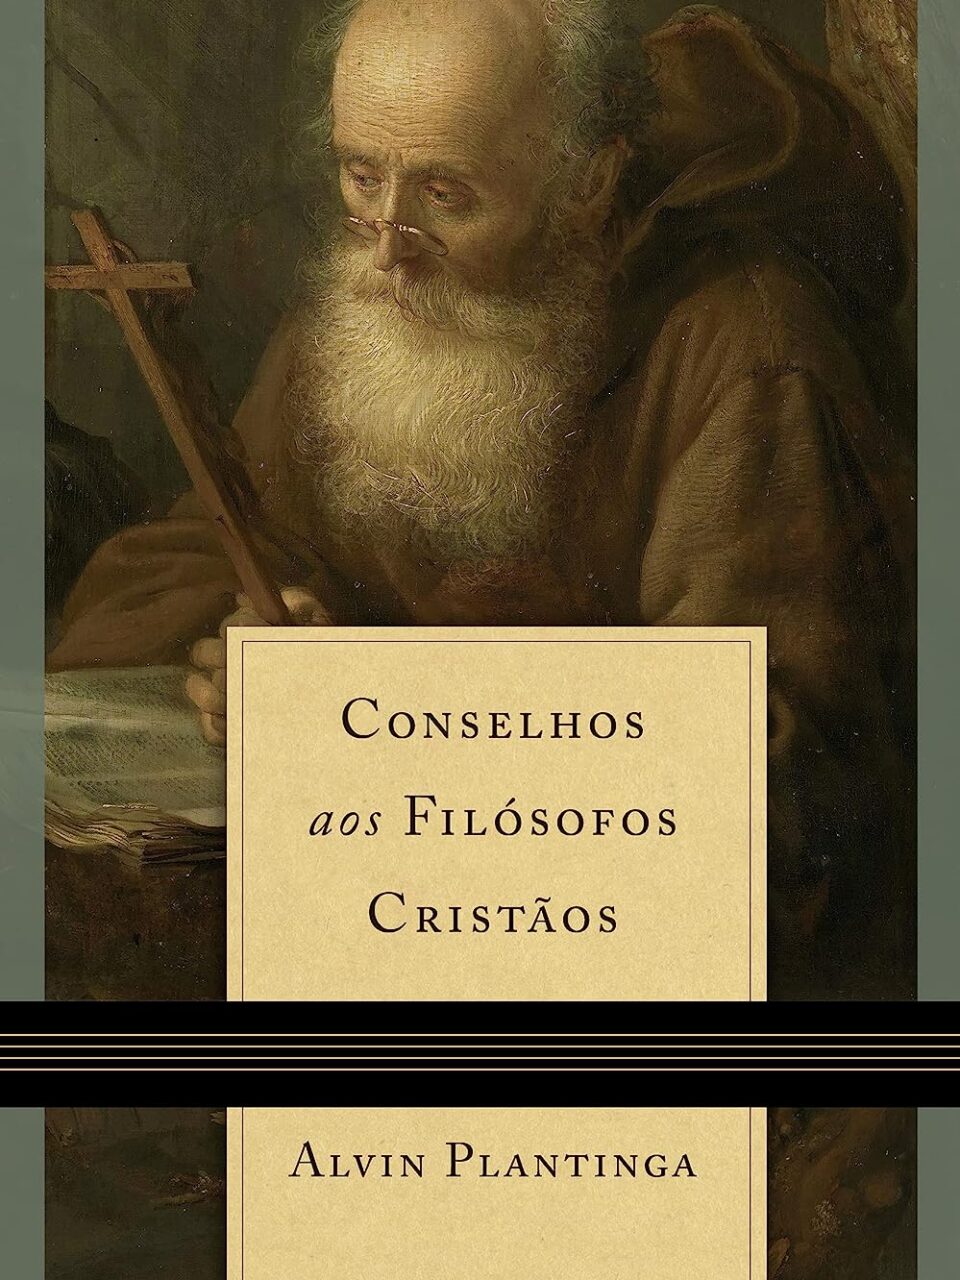 Conselho aos filósofos cristãos - Alvin Plantinga